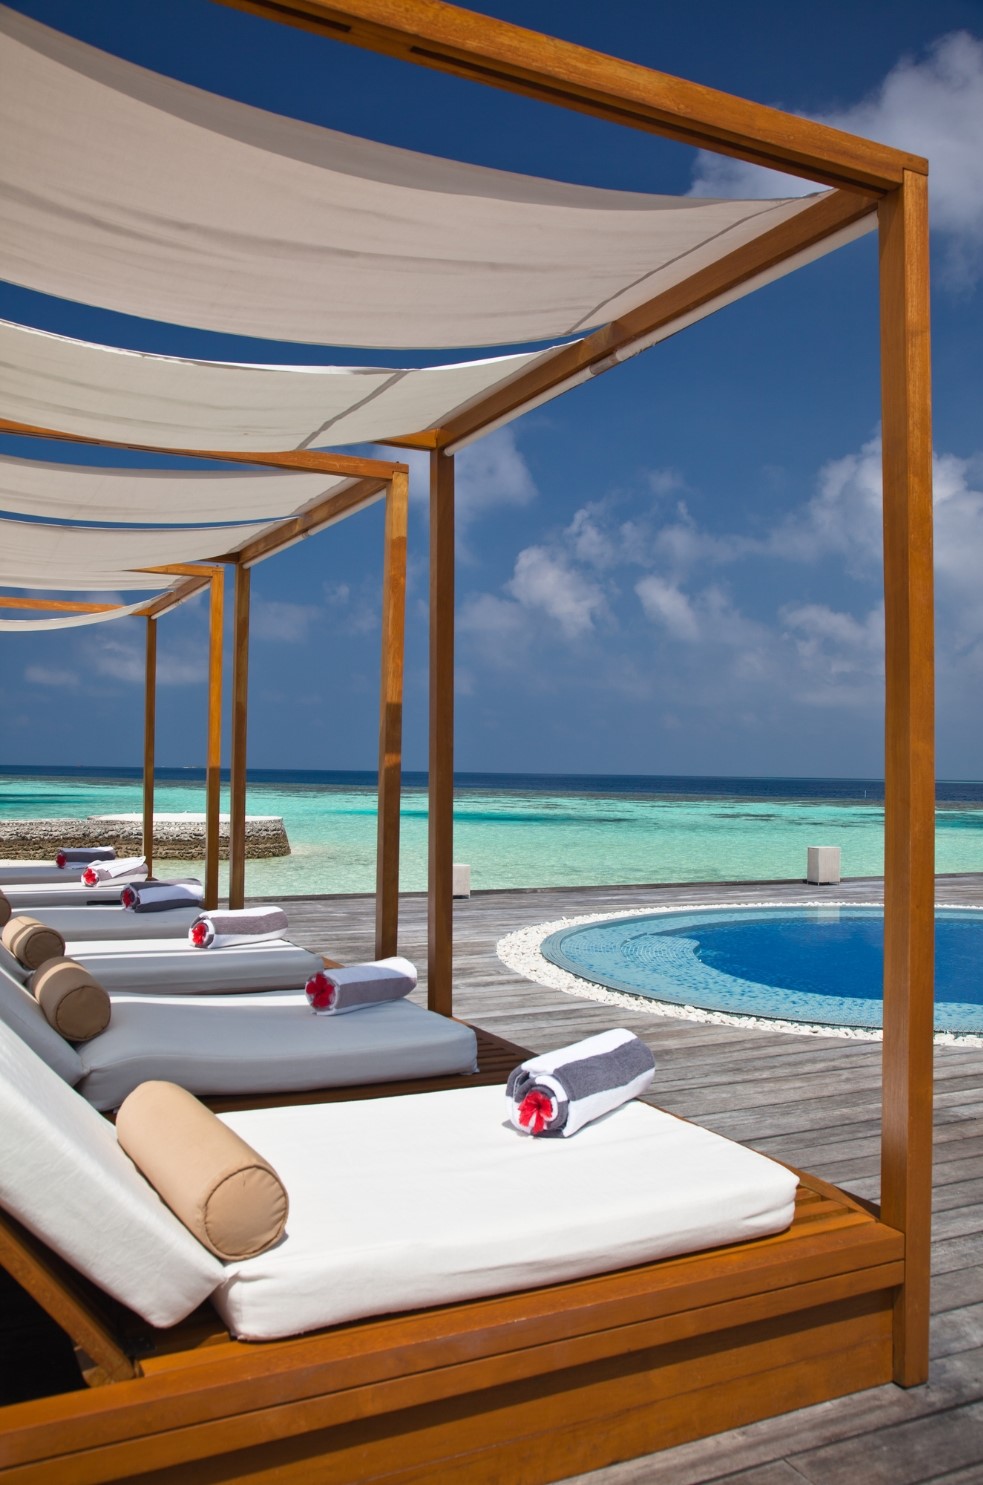 Sun beds at a luxury beach resort